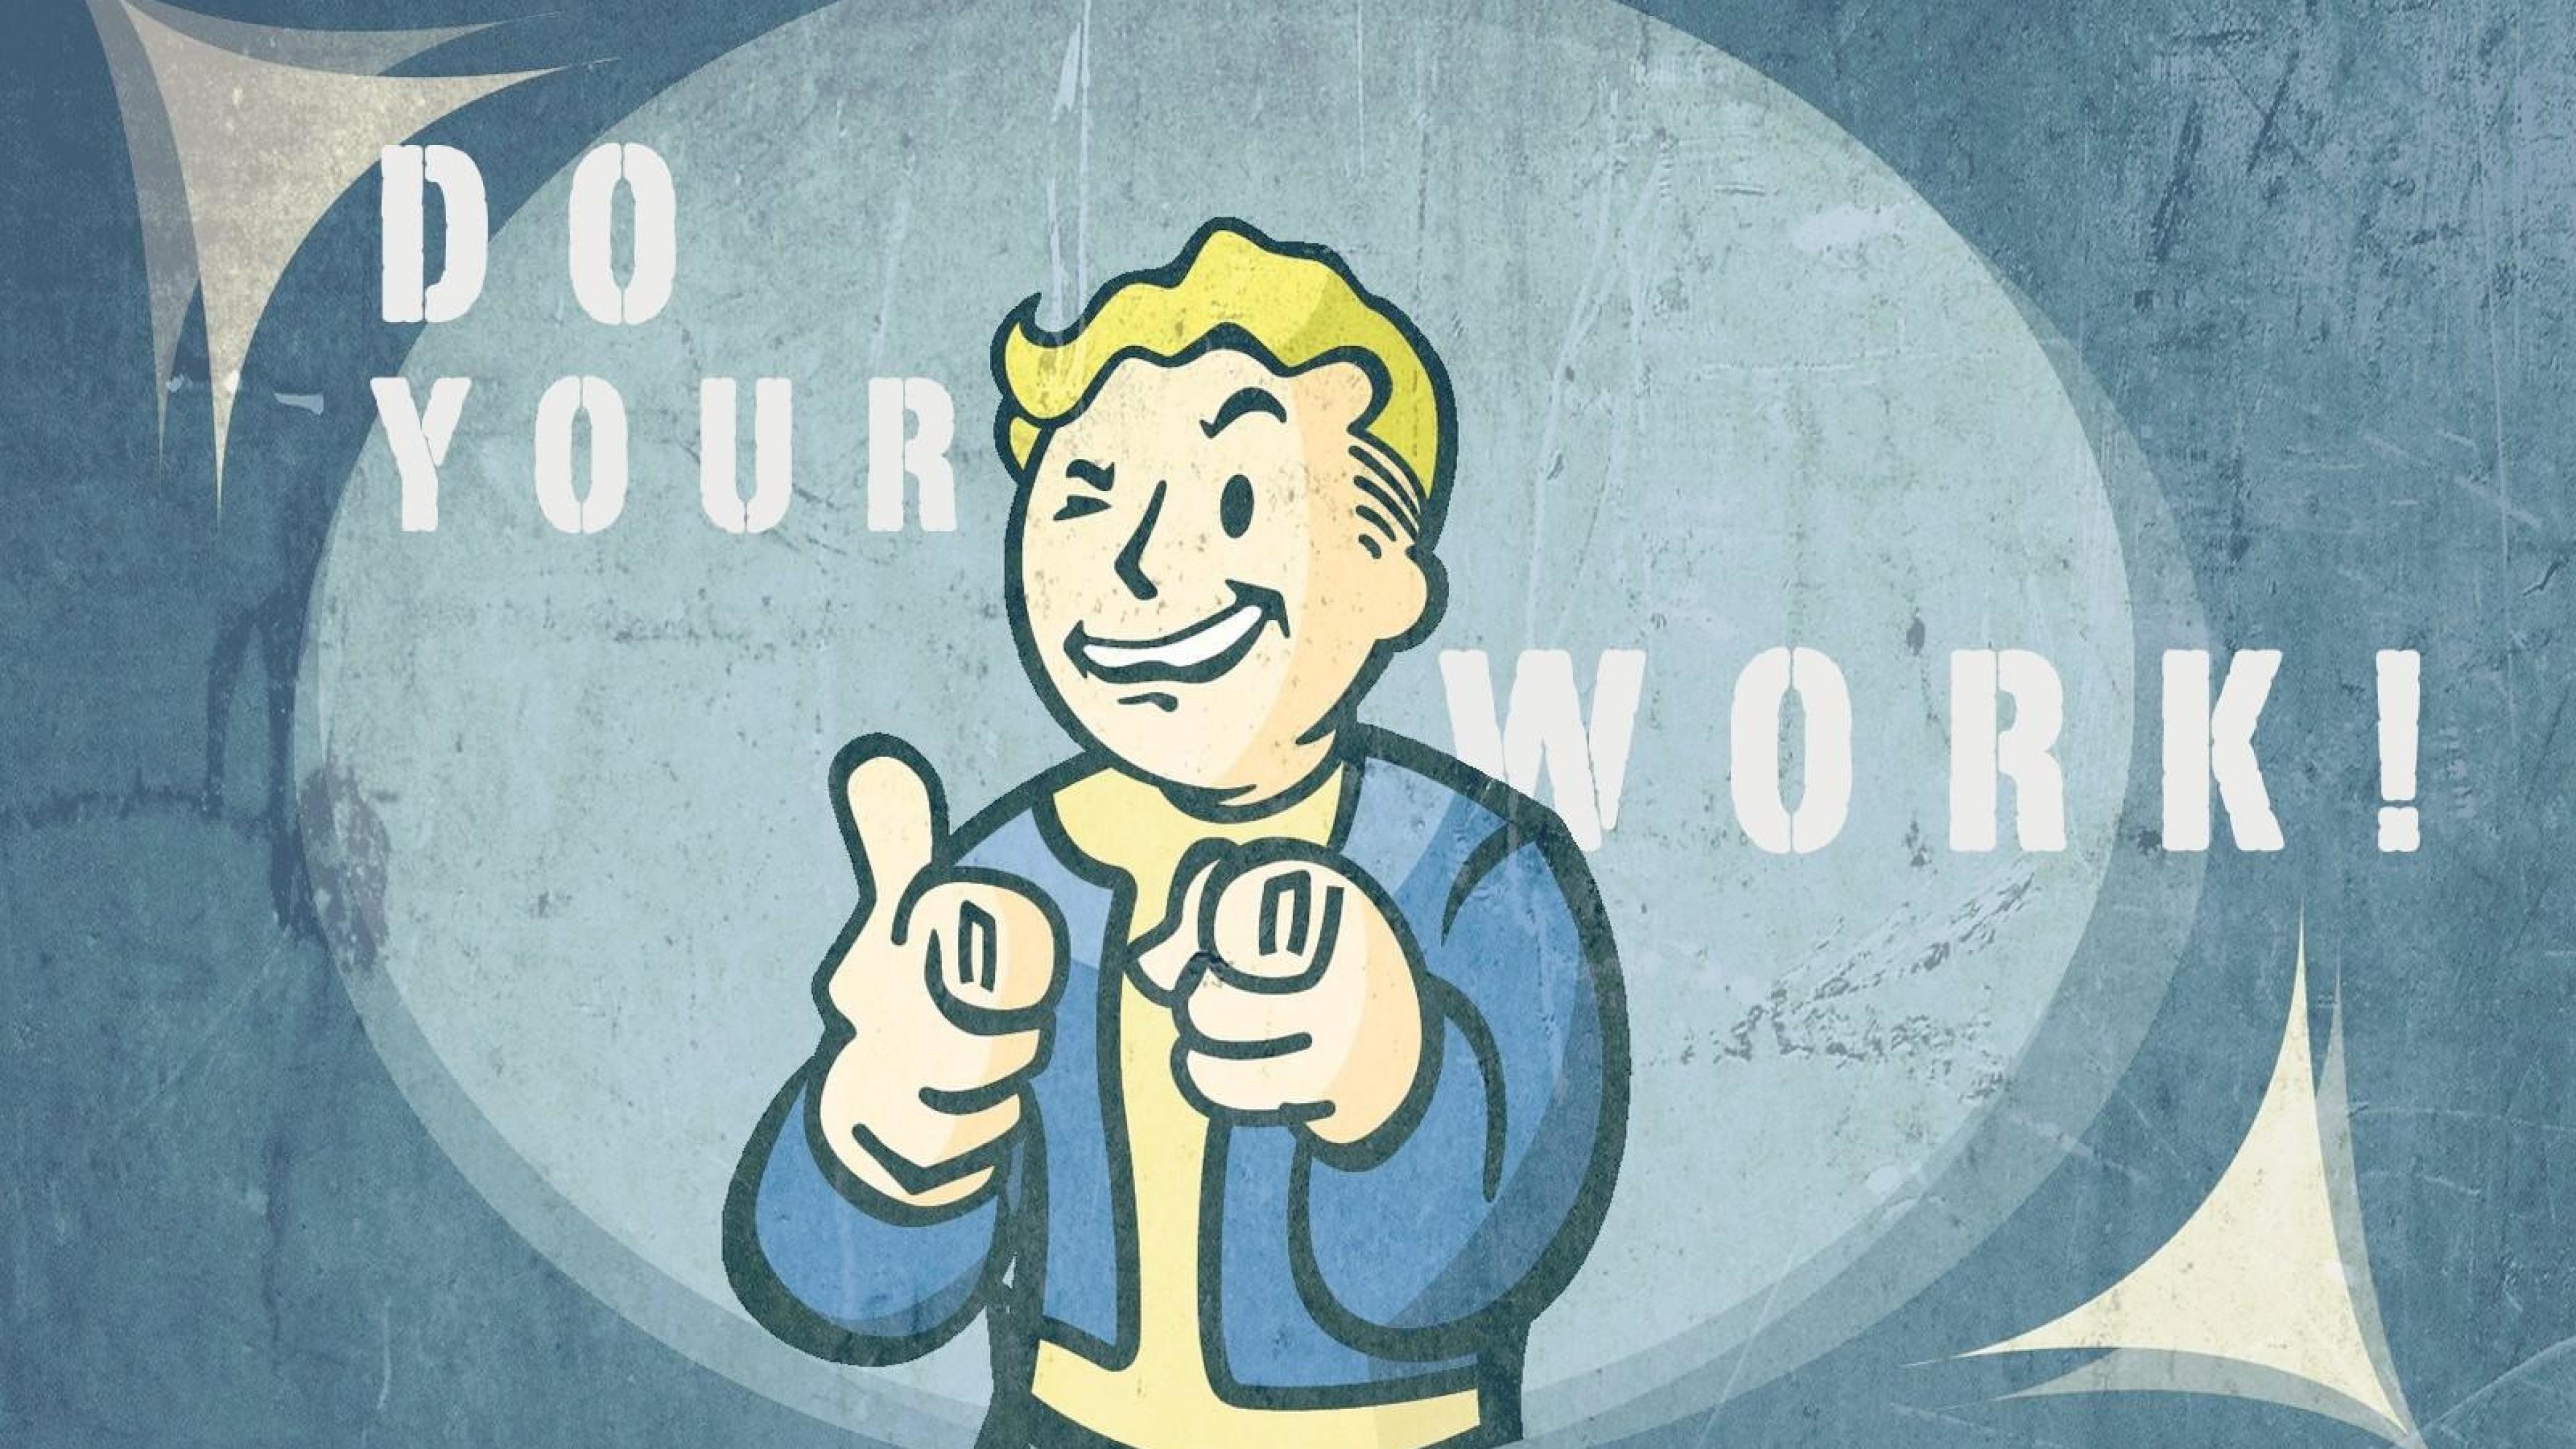 Fallout Pip Boy Wallpaper HD